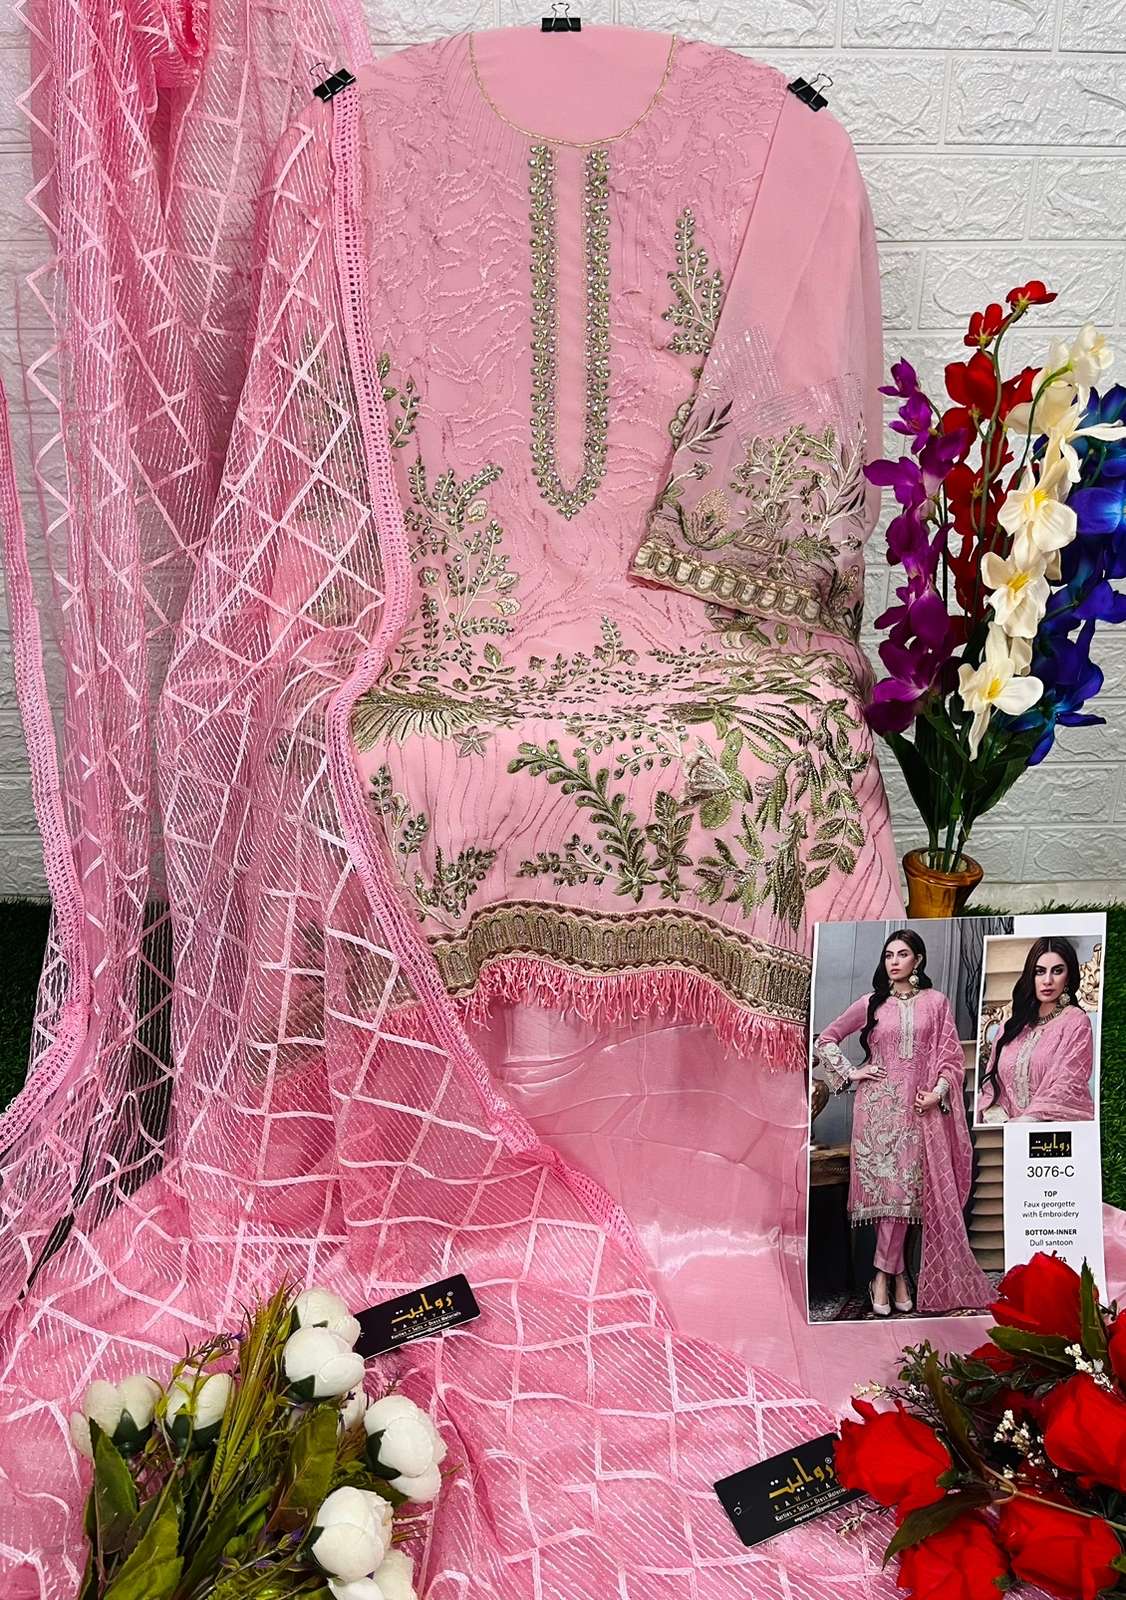 rawayat agha noor vol-3 3076 series attractive look designer pakistani salwar suits in india 